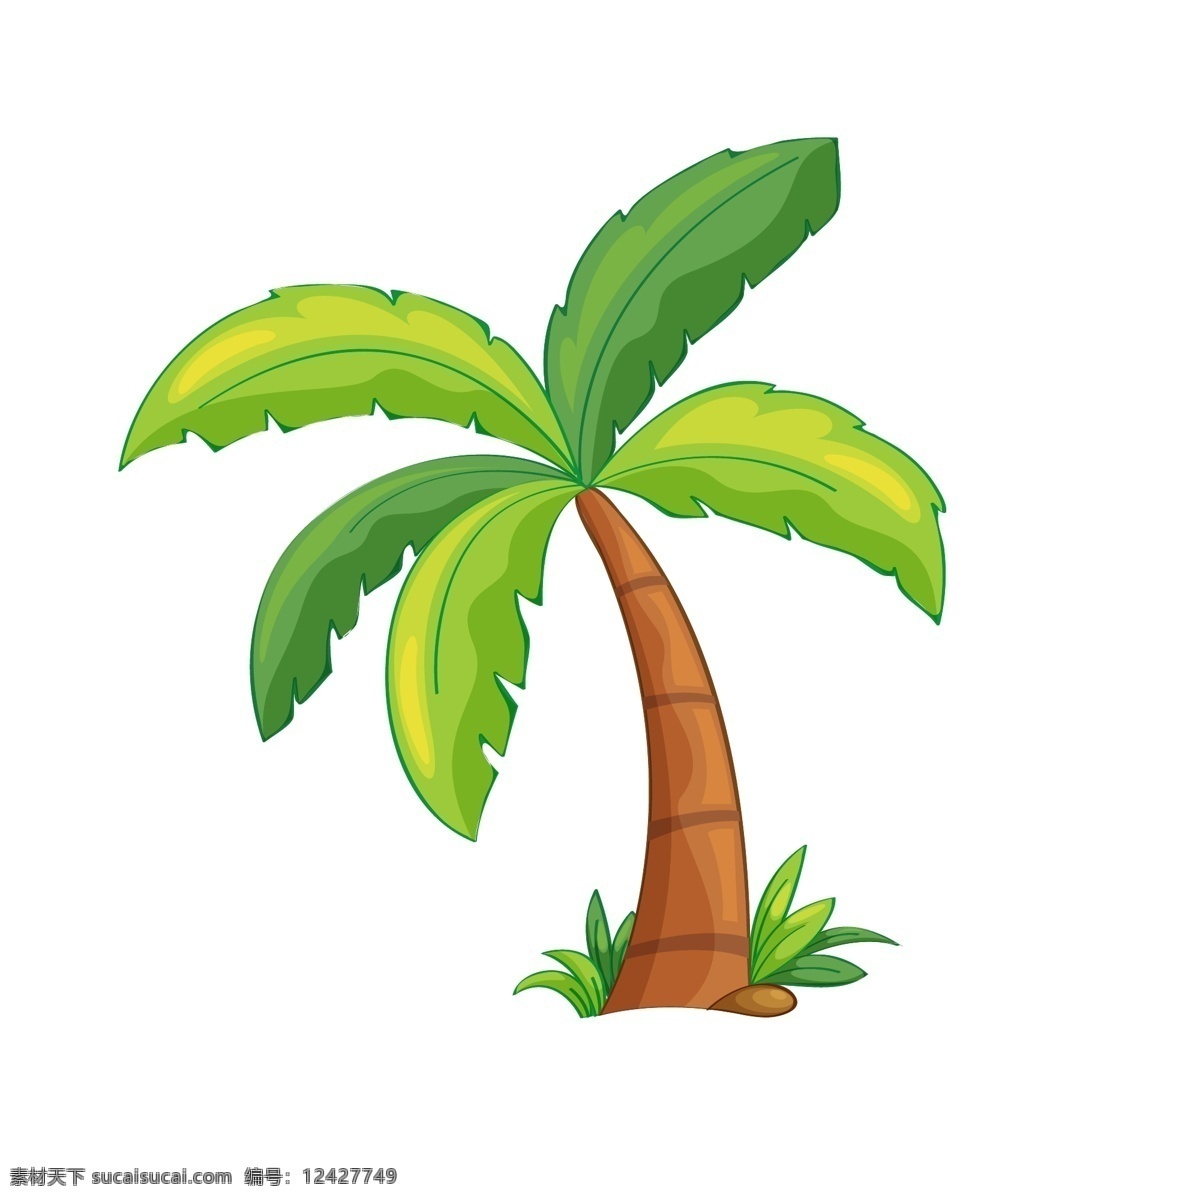 椰树 矢量 卡通 元素